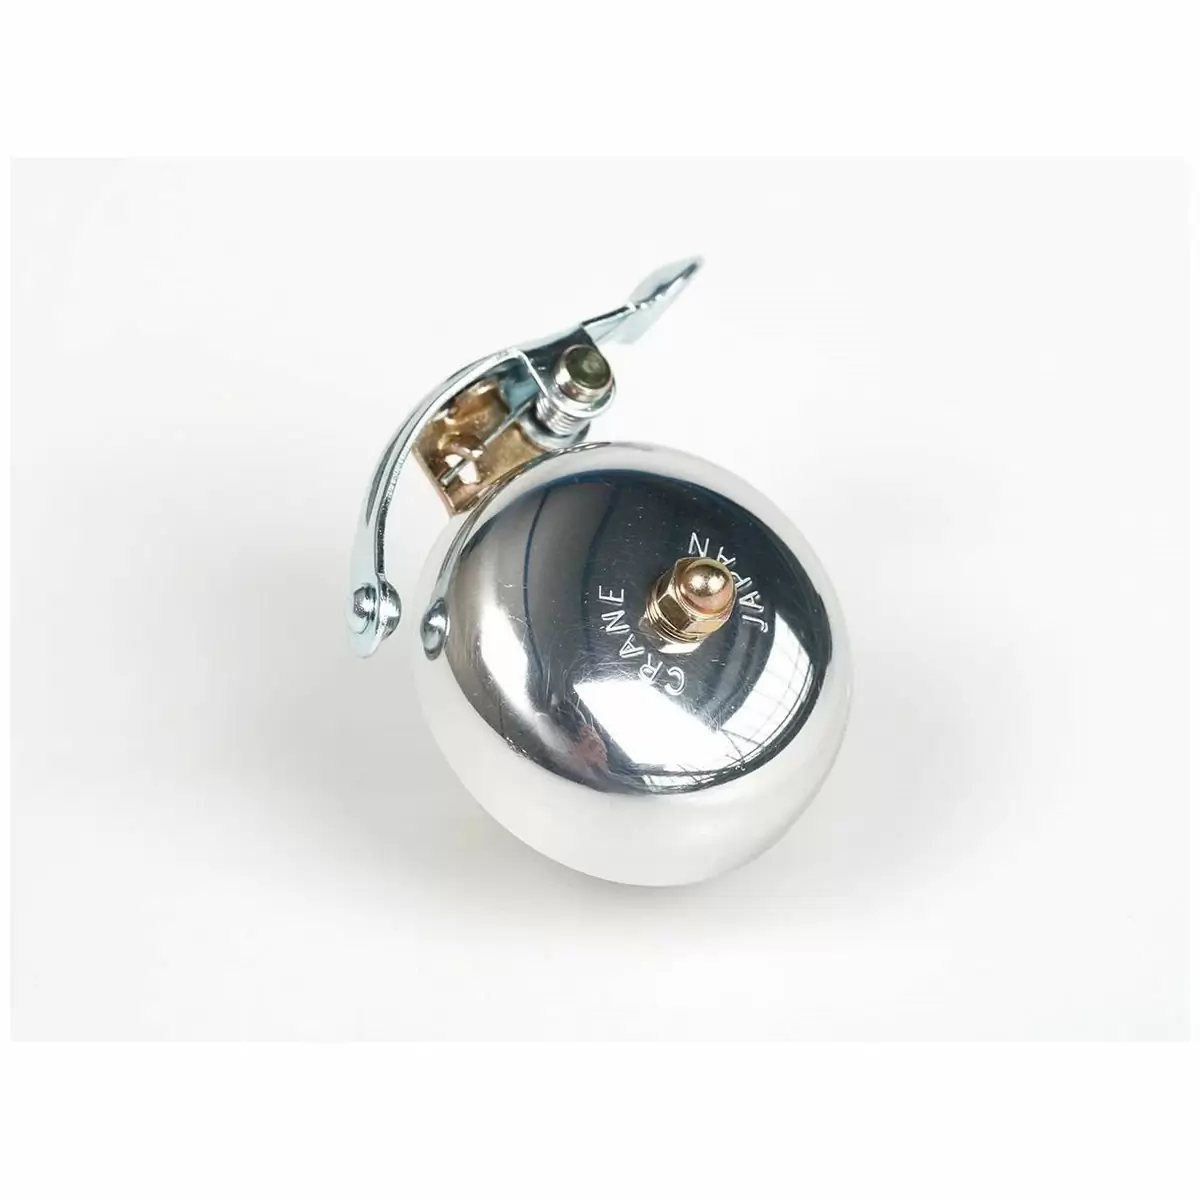 Campanello suzu handlebar argento lucido - image